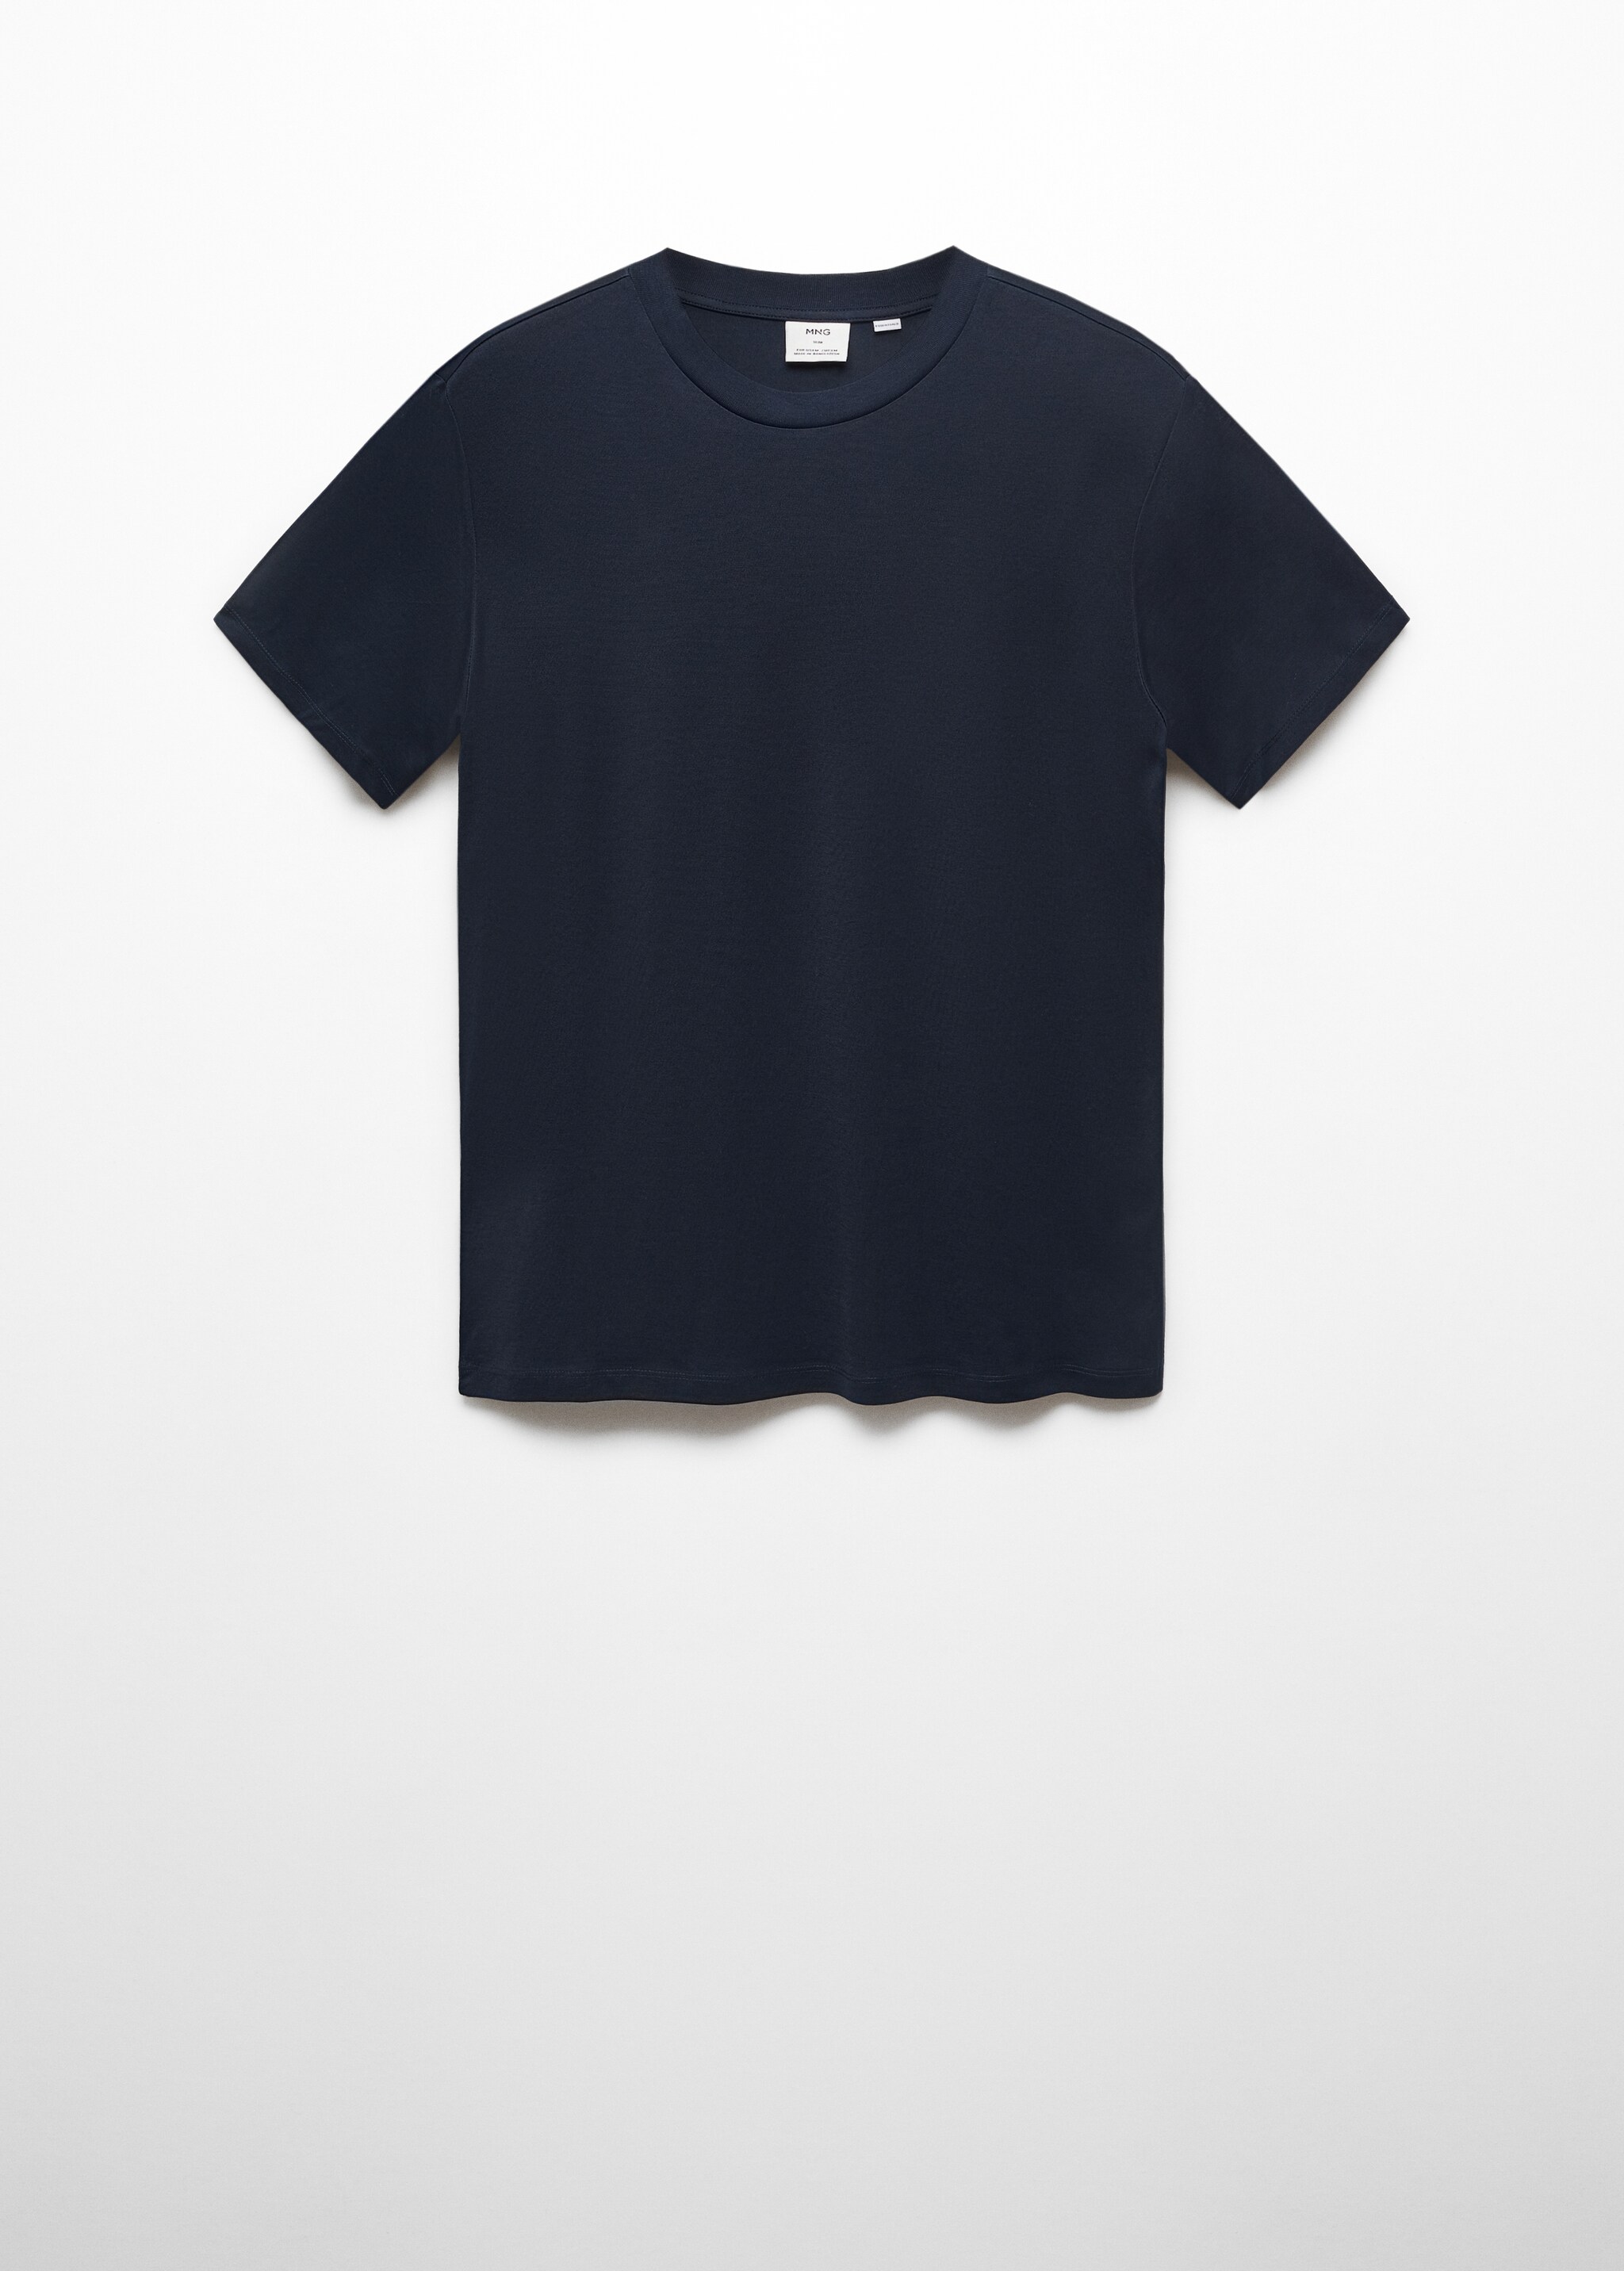 T-shirt slim-fit mercerizzata - Articolo senza modello